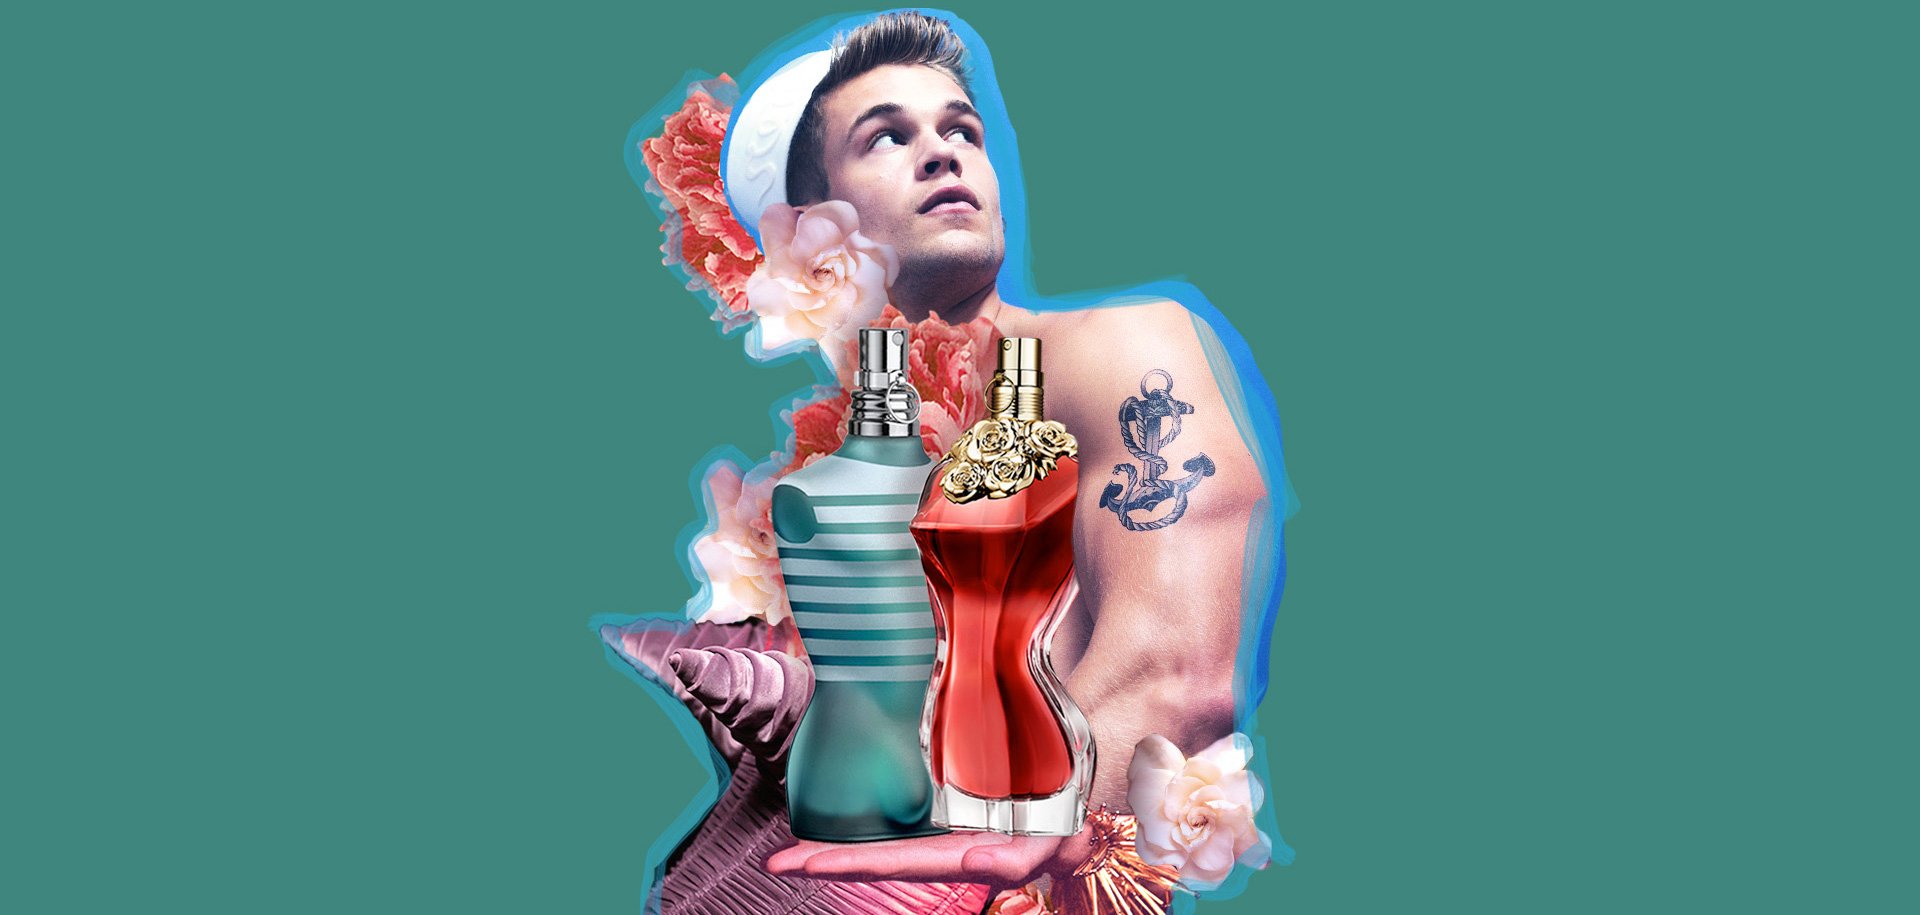 Le Male Eau de Toilette, son modèle marin, et La Belle Eau de Parfum Jean Paul Gaultier